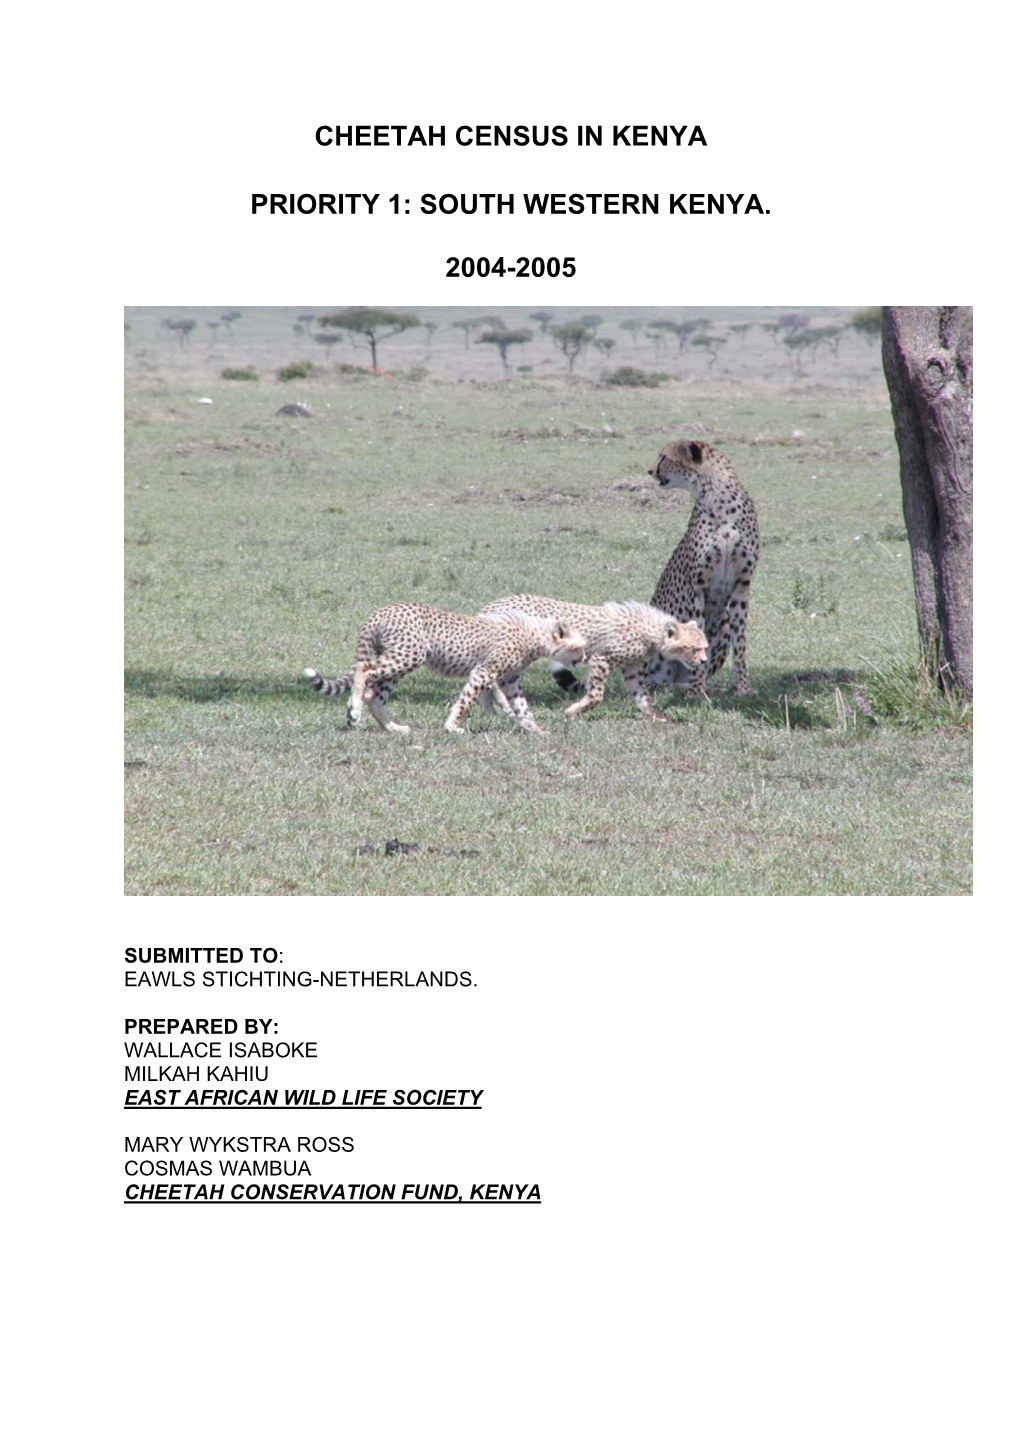 Cheetah Census in Kenya